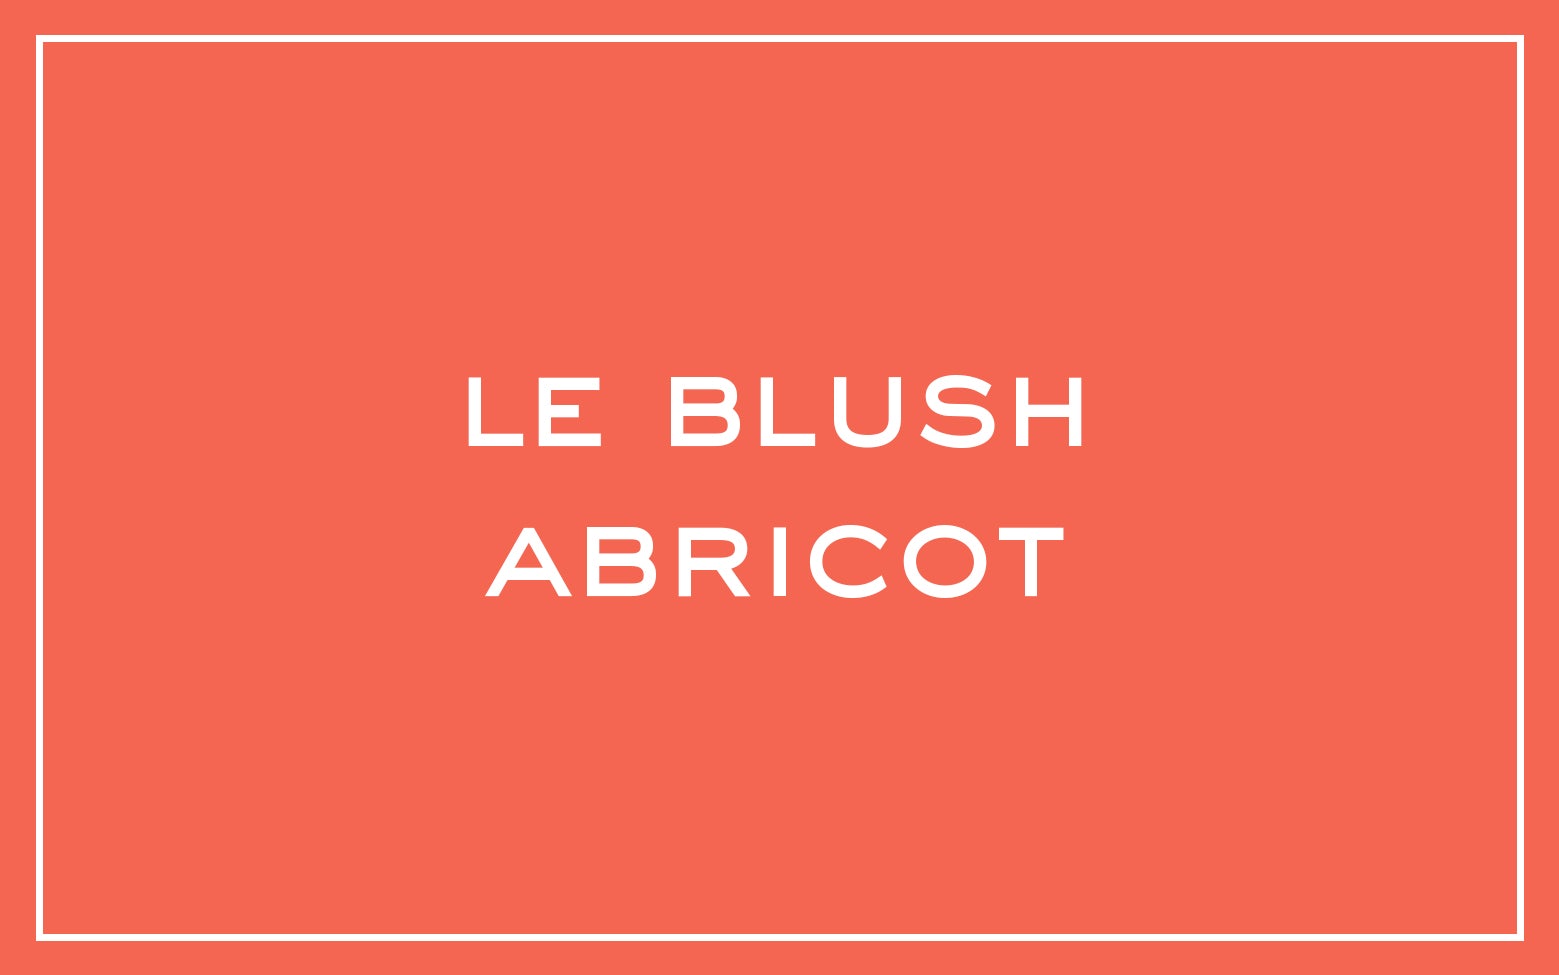 La bouche rouge nuance Le Blush Abricot avec du texte